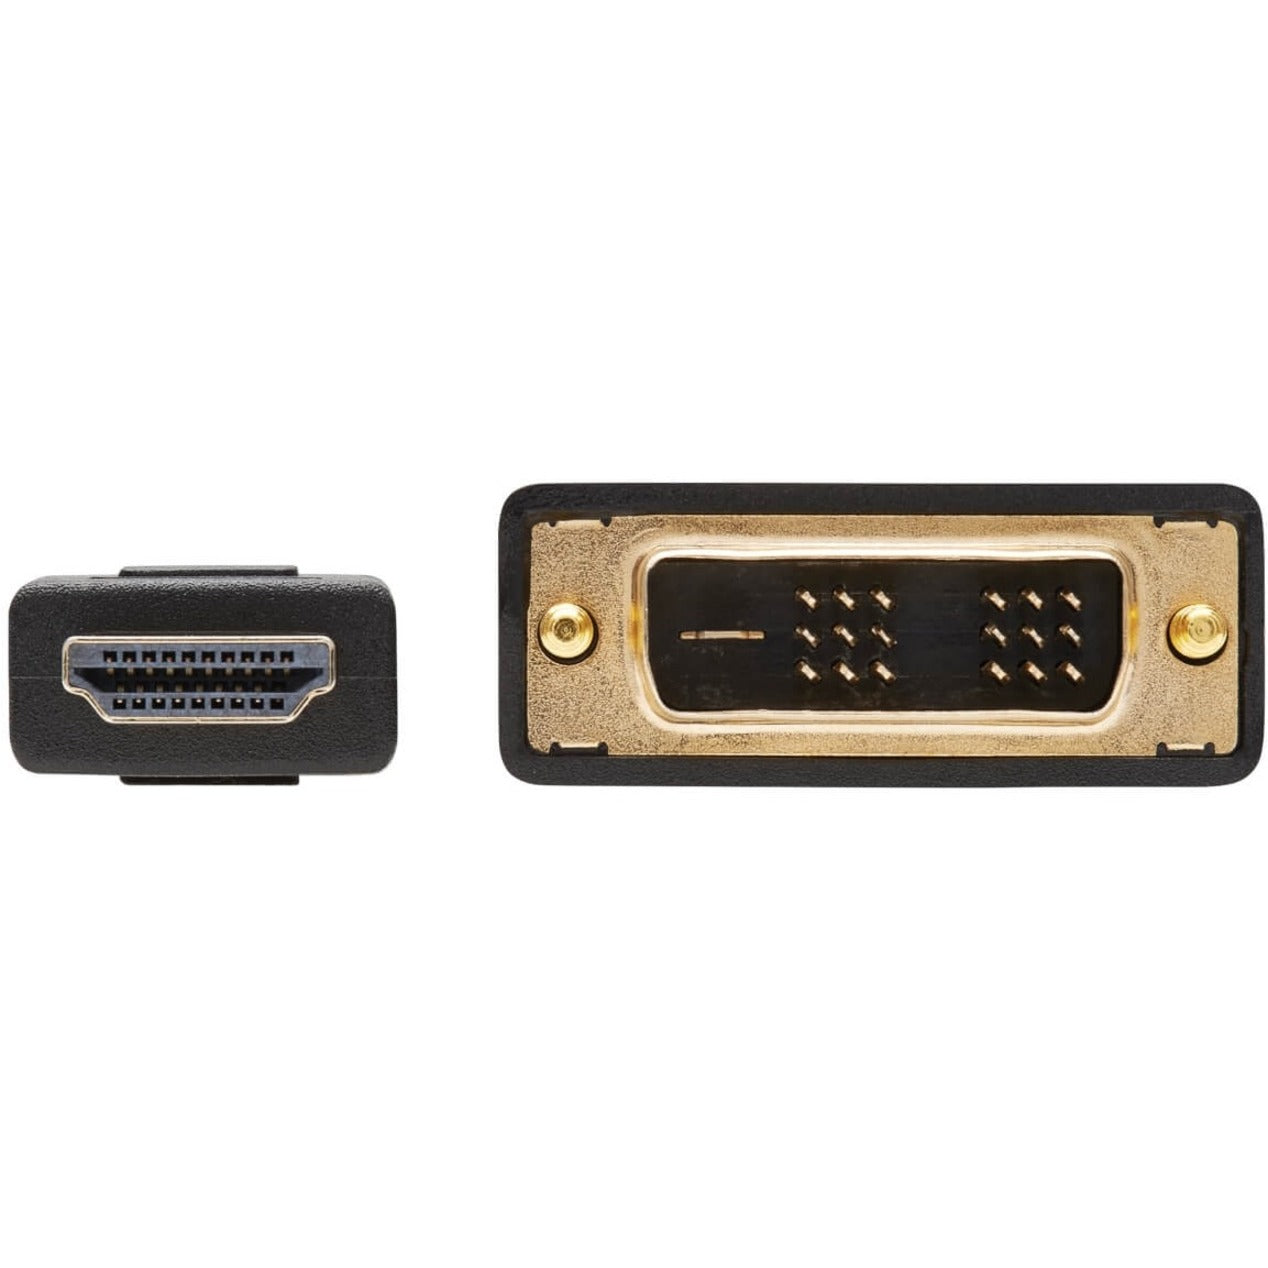 تريب لايت P566-010 كابل فيديو رقائق ذهبية ، DVI إلى HDMI ذكر ، موصل نحاس اسم العلامة التجارية: تريب لايت